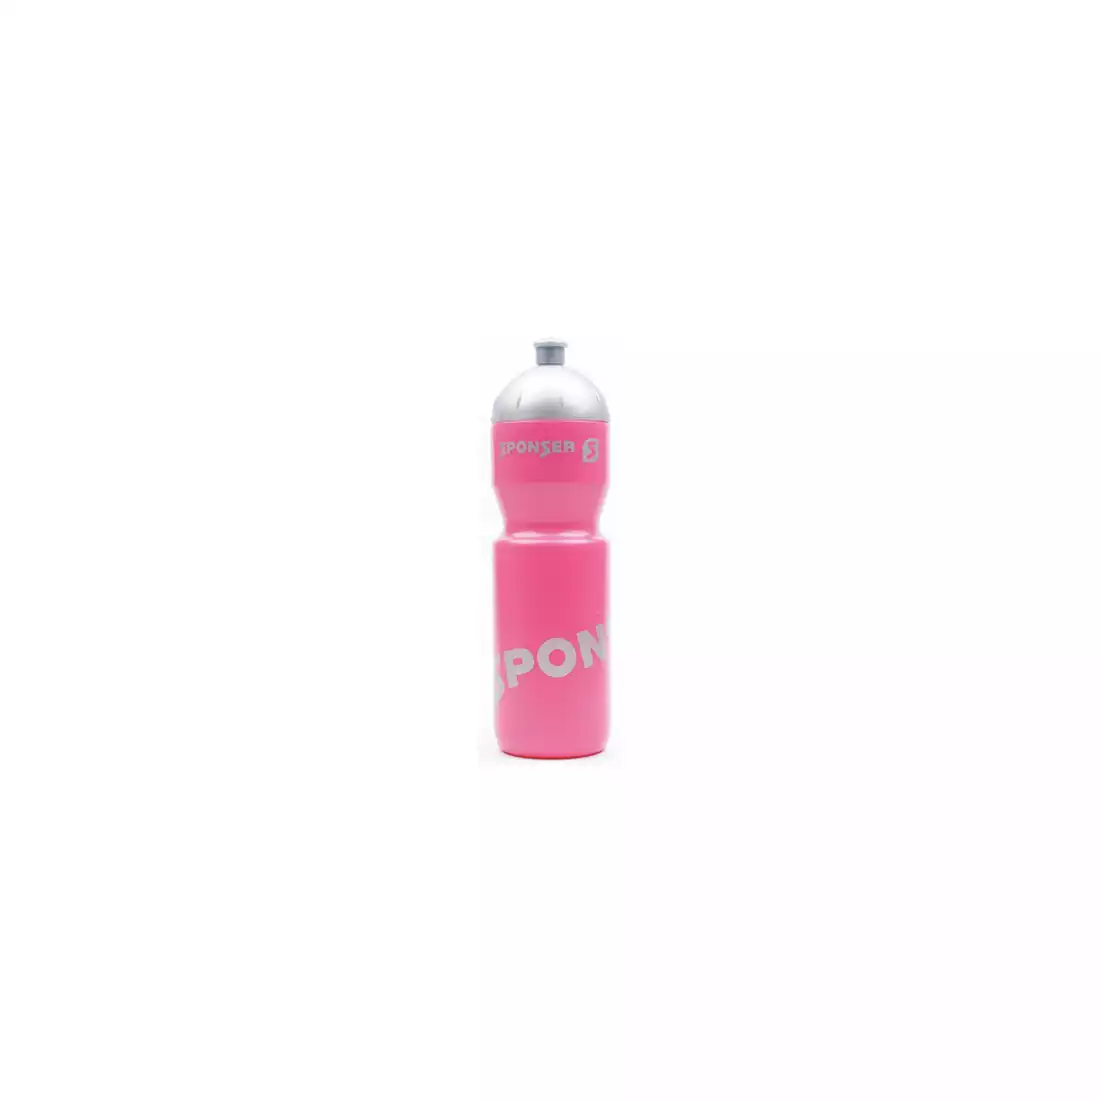 SPONSER NETTO fahrrad wasserflasche 750 ml, rosa/silber